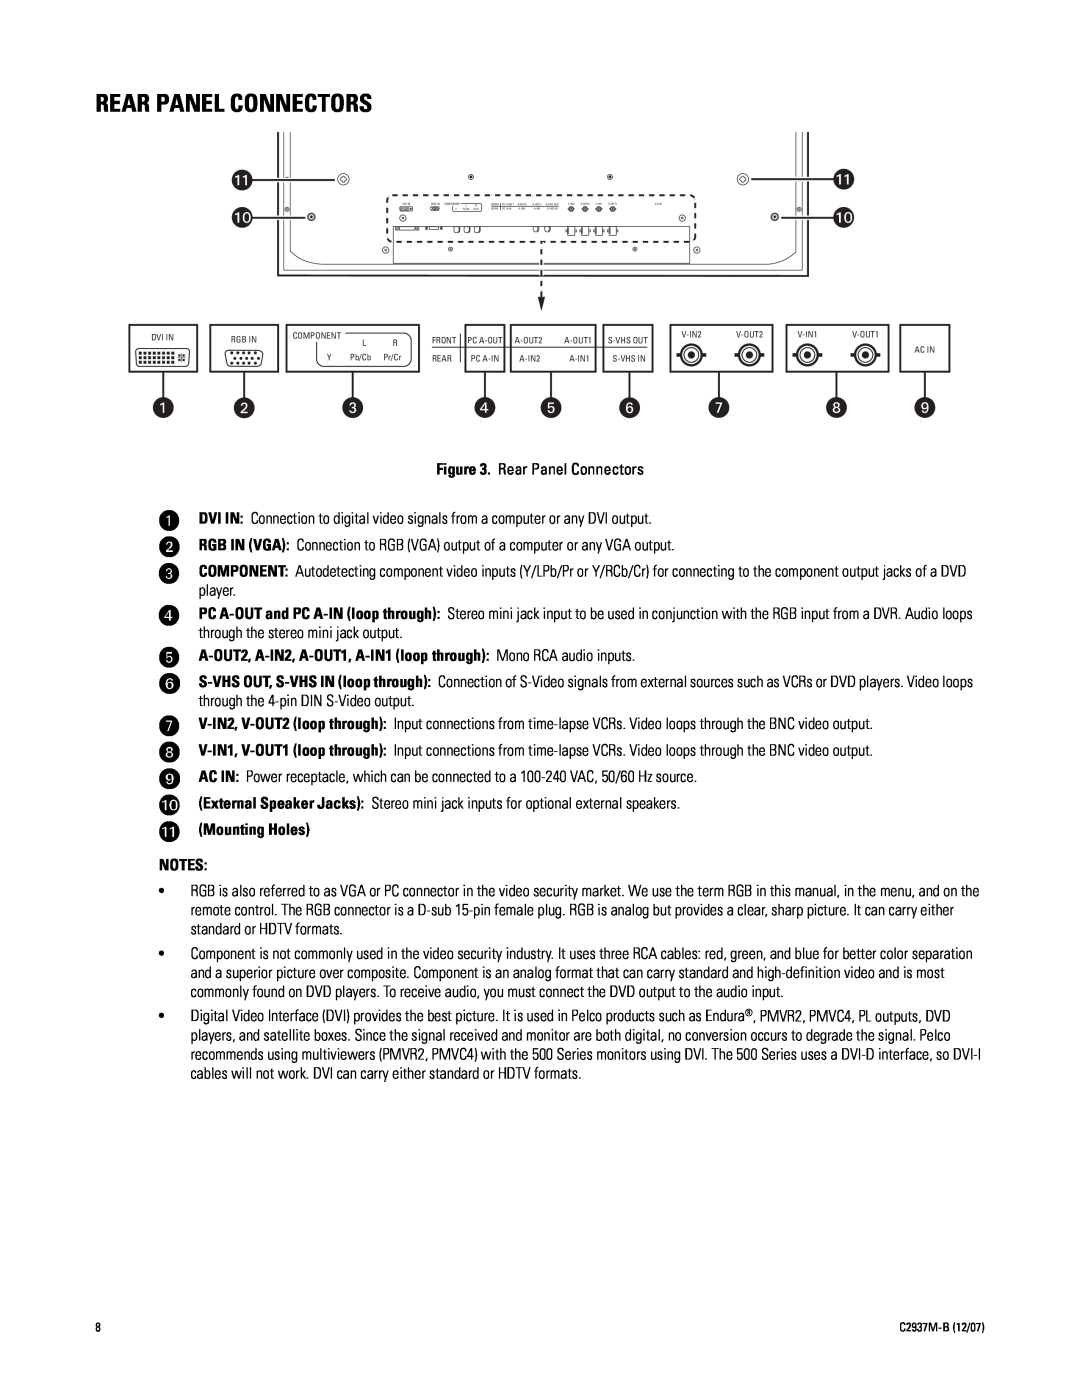 Pelco PMCL526A manual Rear Panel Connectors, ì î ï ñ ó r, A-OUT2, A-IN2, A-OUT1, A-IN1 loop through Mono RCA audio inputs 